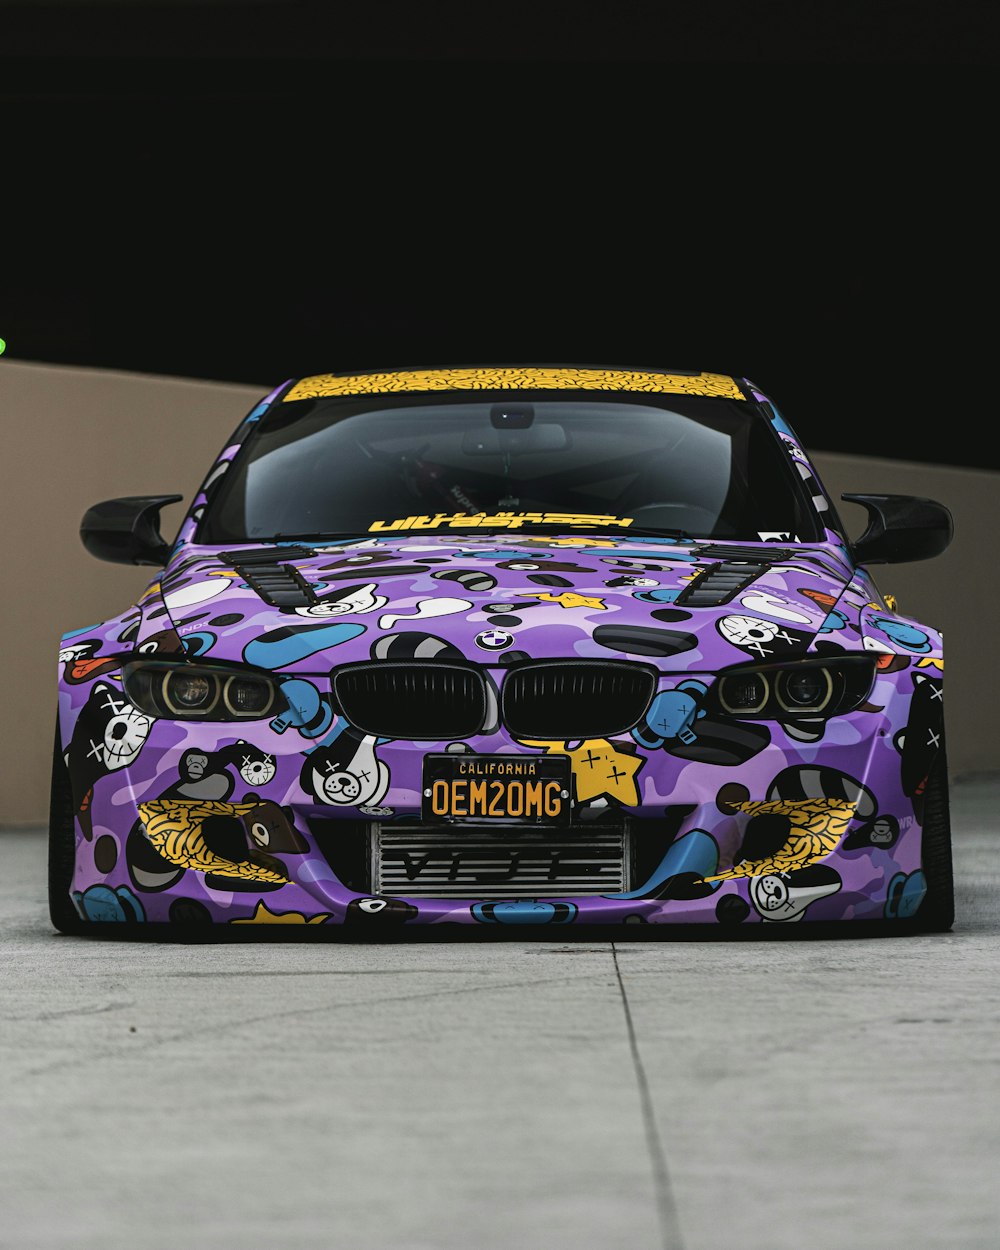 Porsche 911 violette et noire